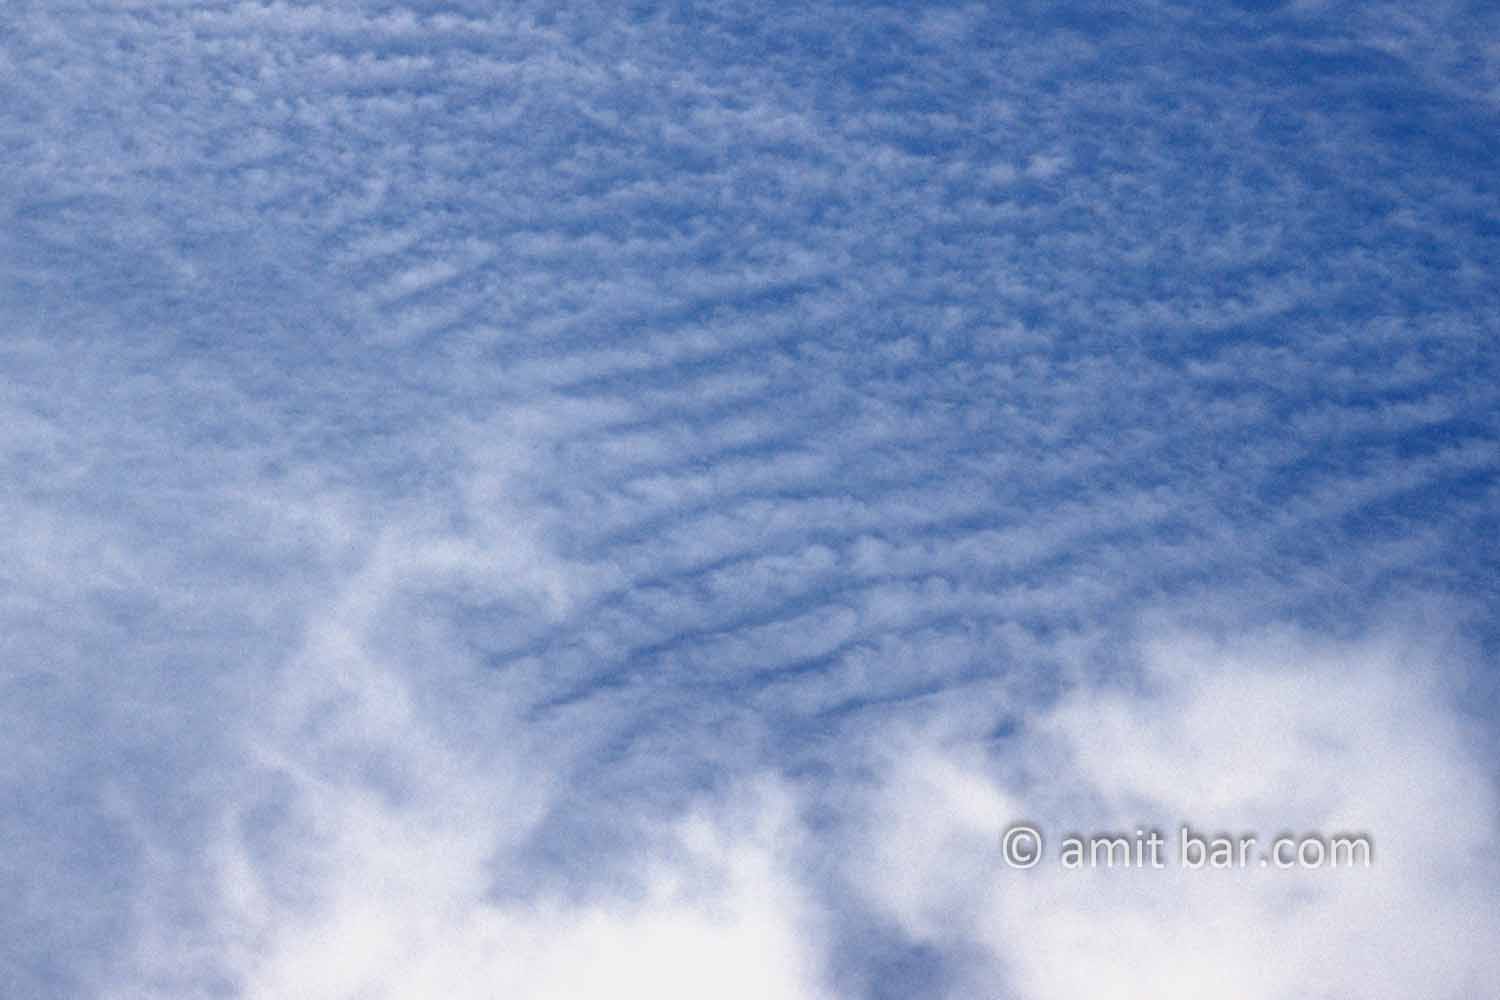 Clouds X: White clouds in blue sky